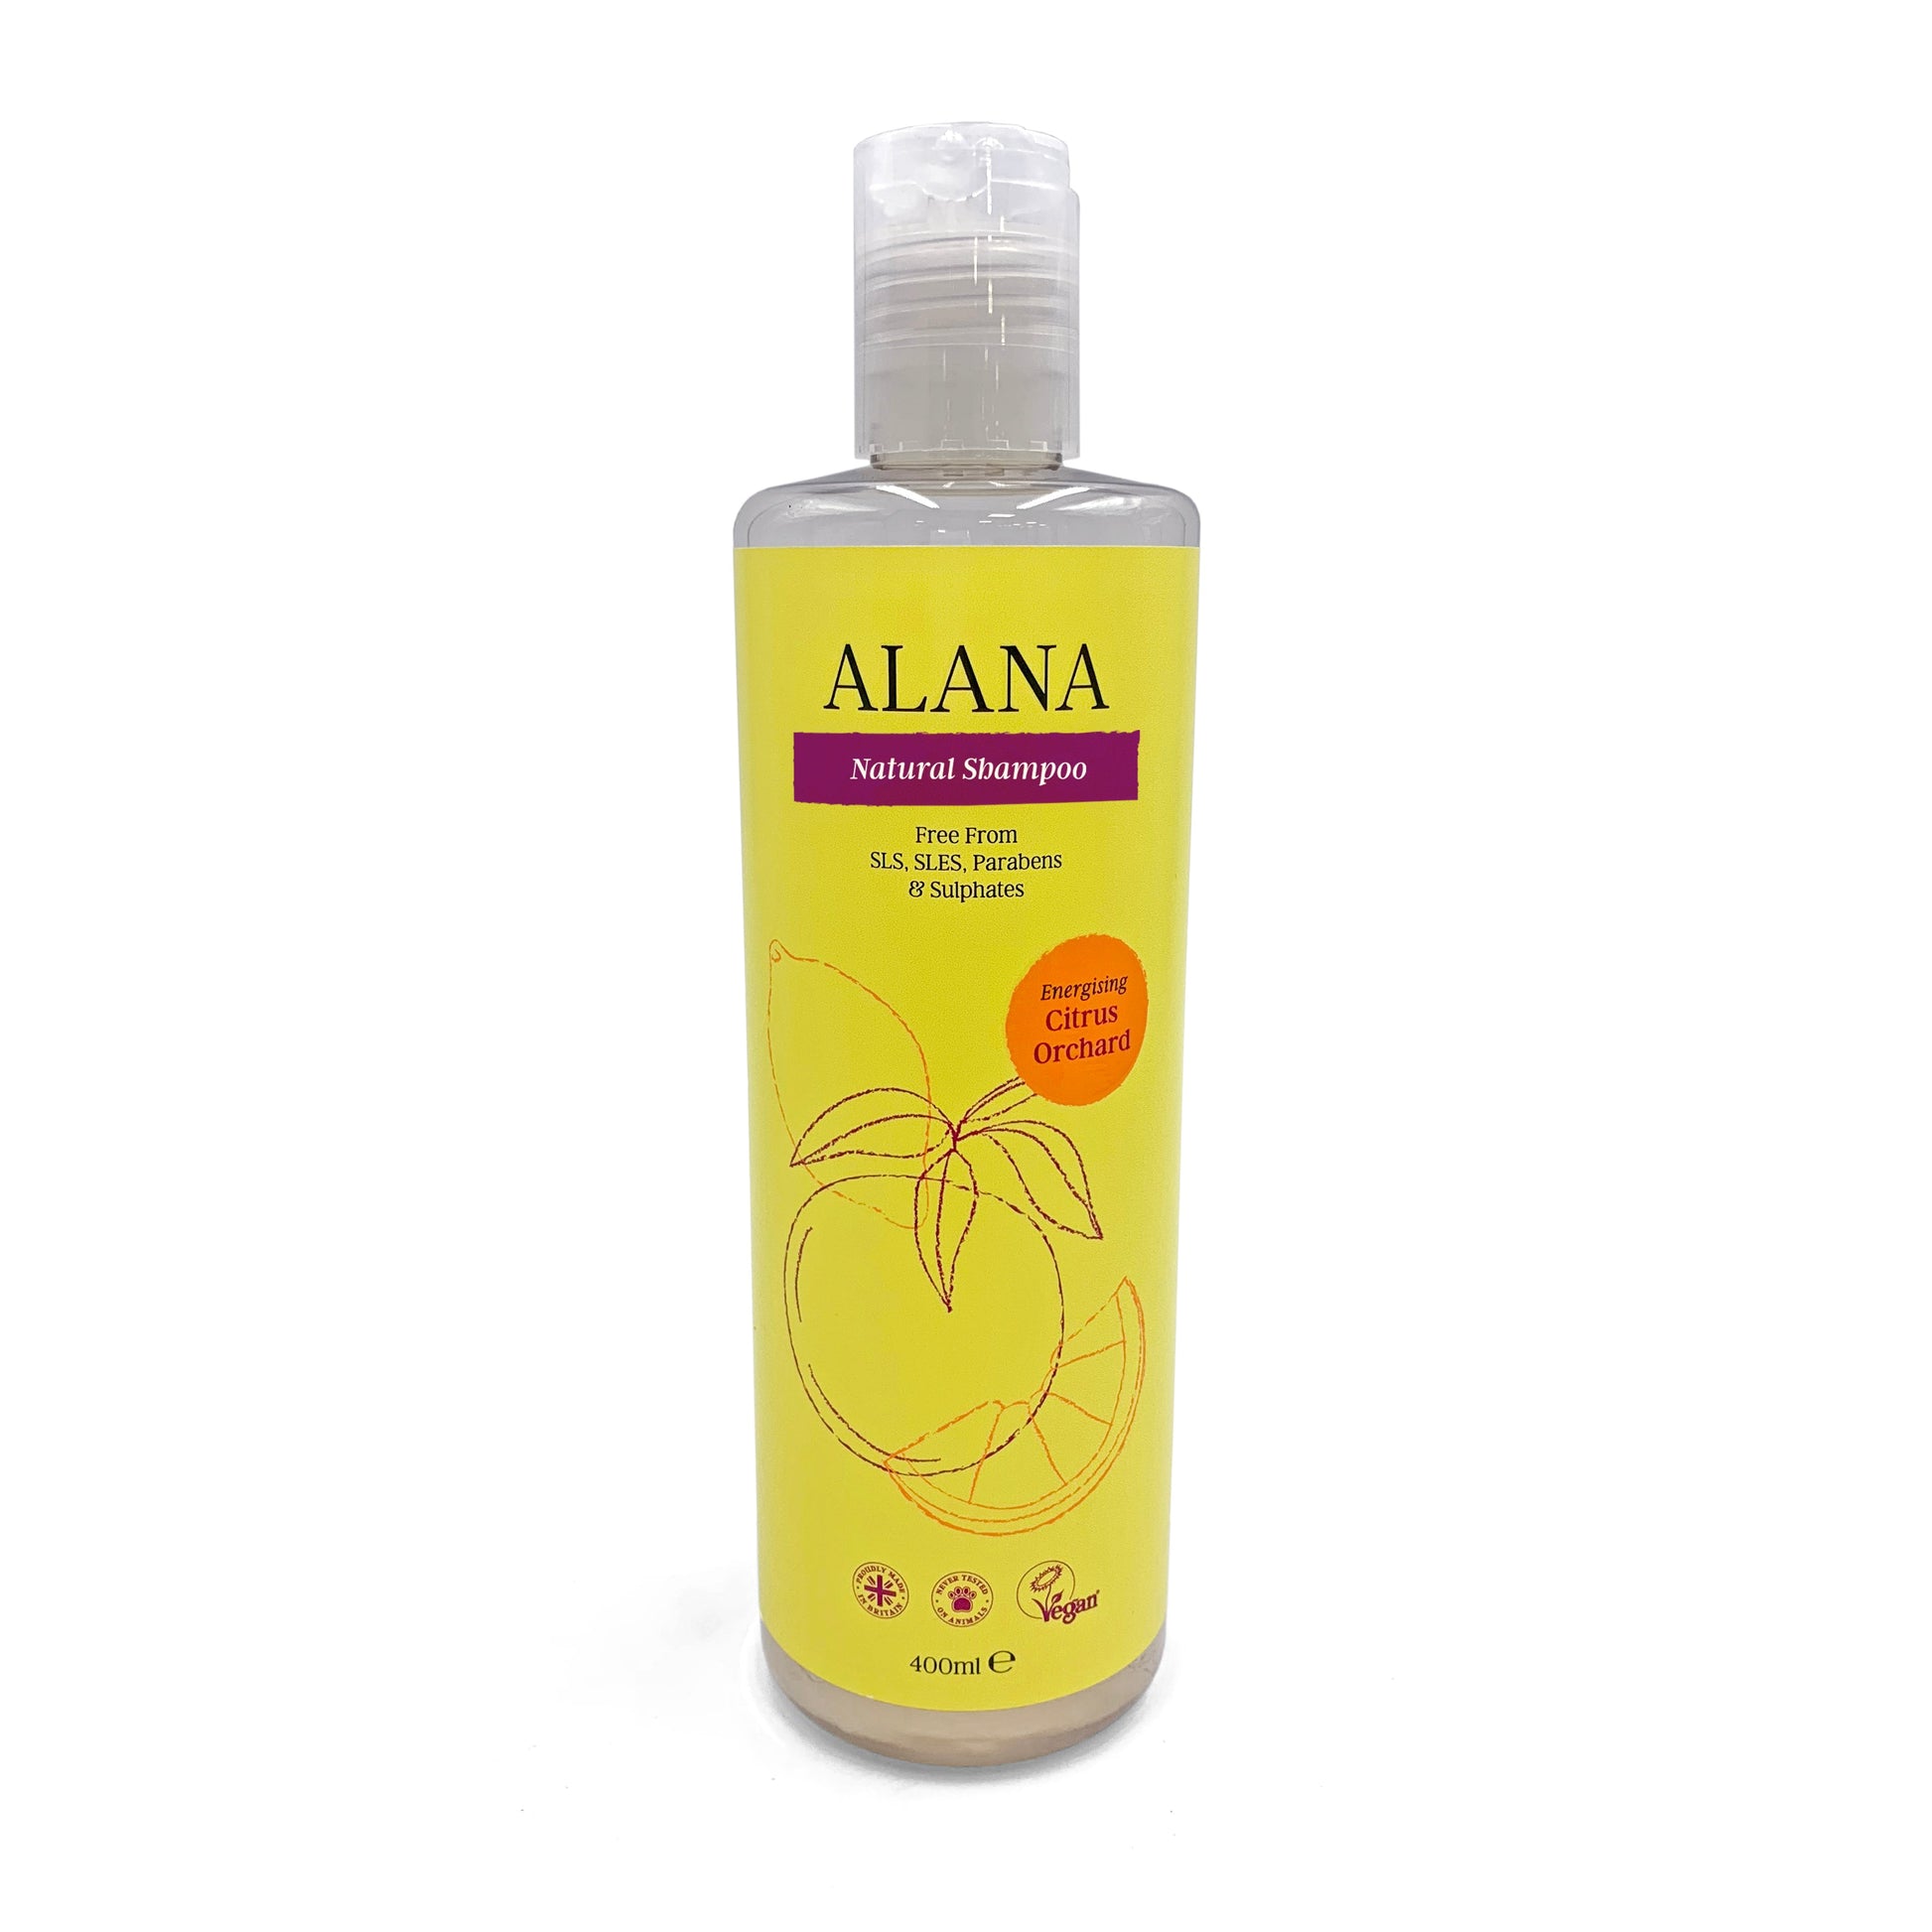 Alana Citrus Orchard Natural Shampoo 400ml - Just Natural